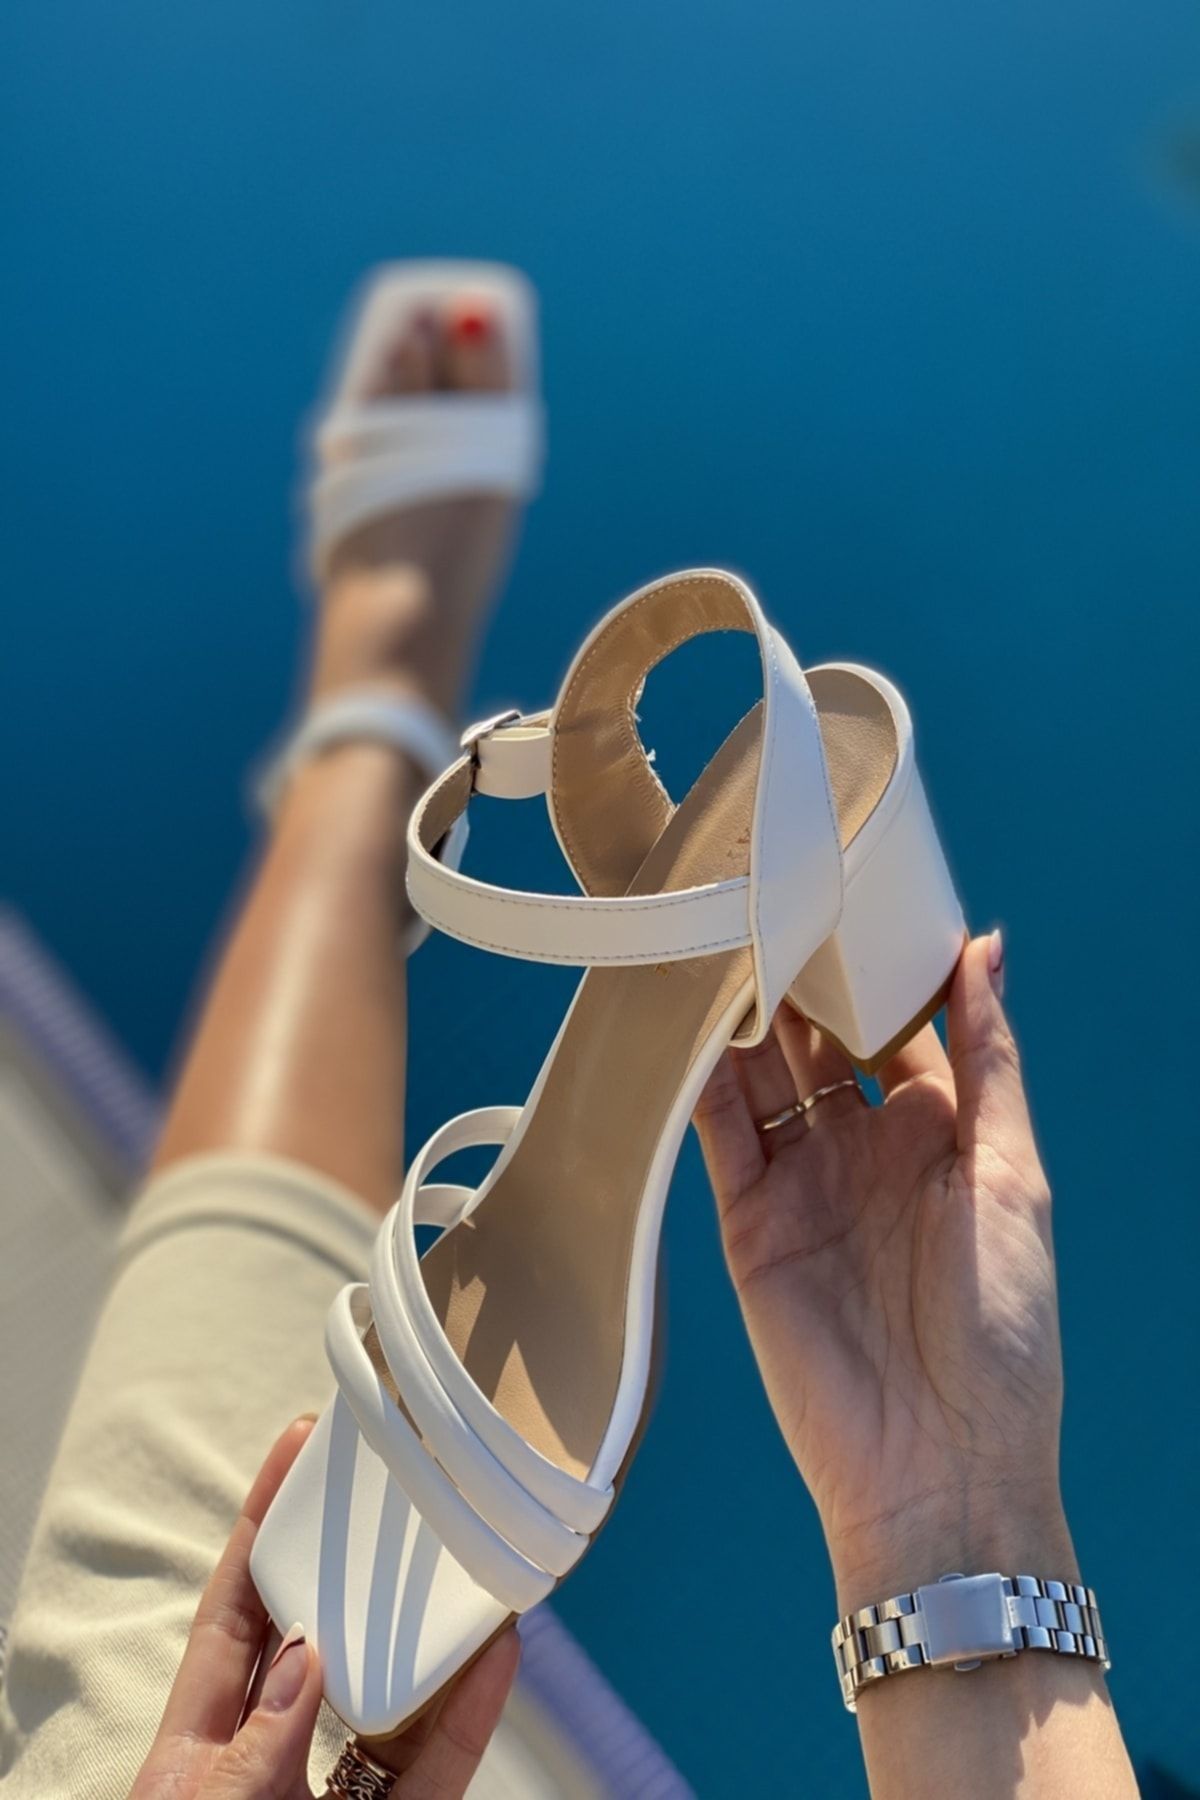 İnan Ayakkabı Kadın Beyaz Renk Üç Bant Ve Bilekten Kemer Detaylı Topuklu Ayakkabı 6 Cm Topuk